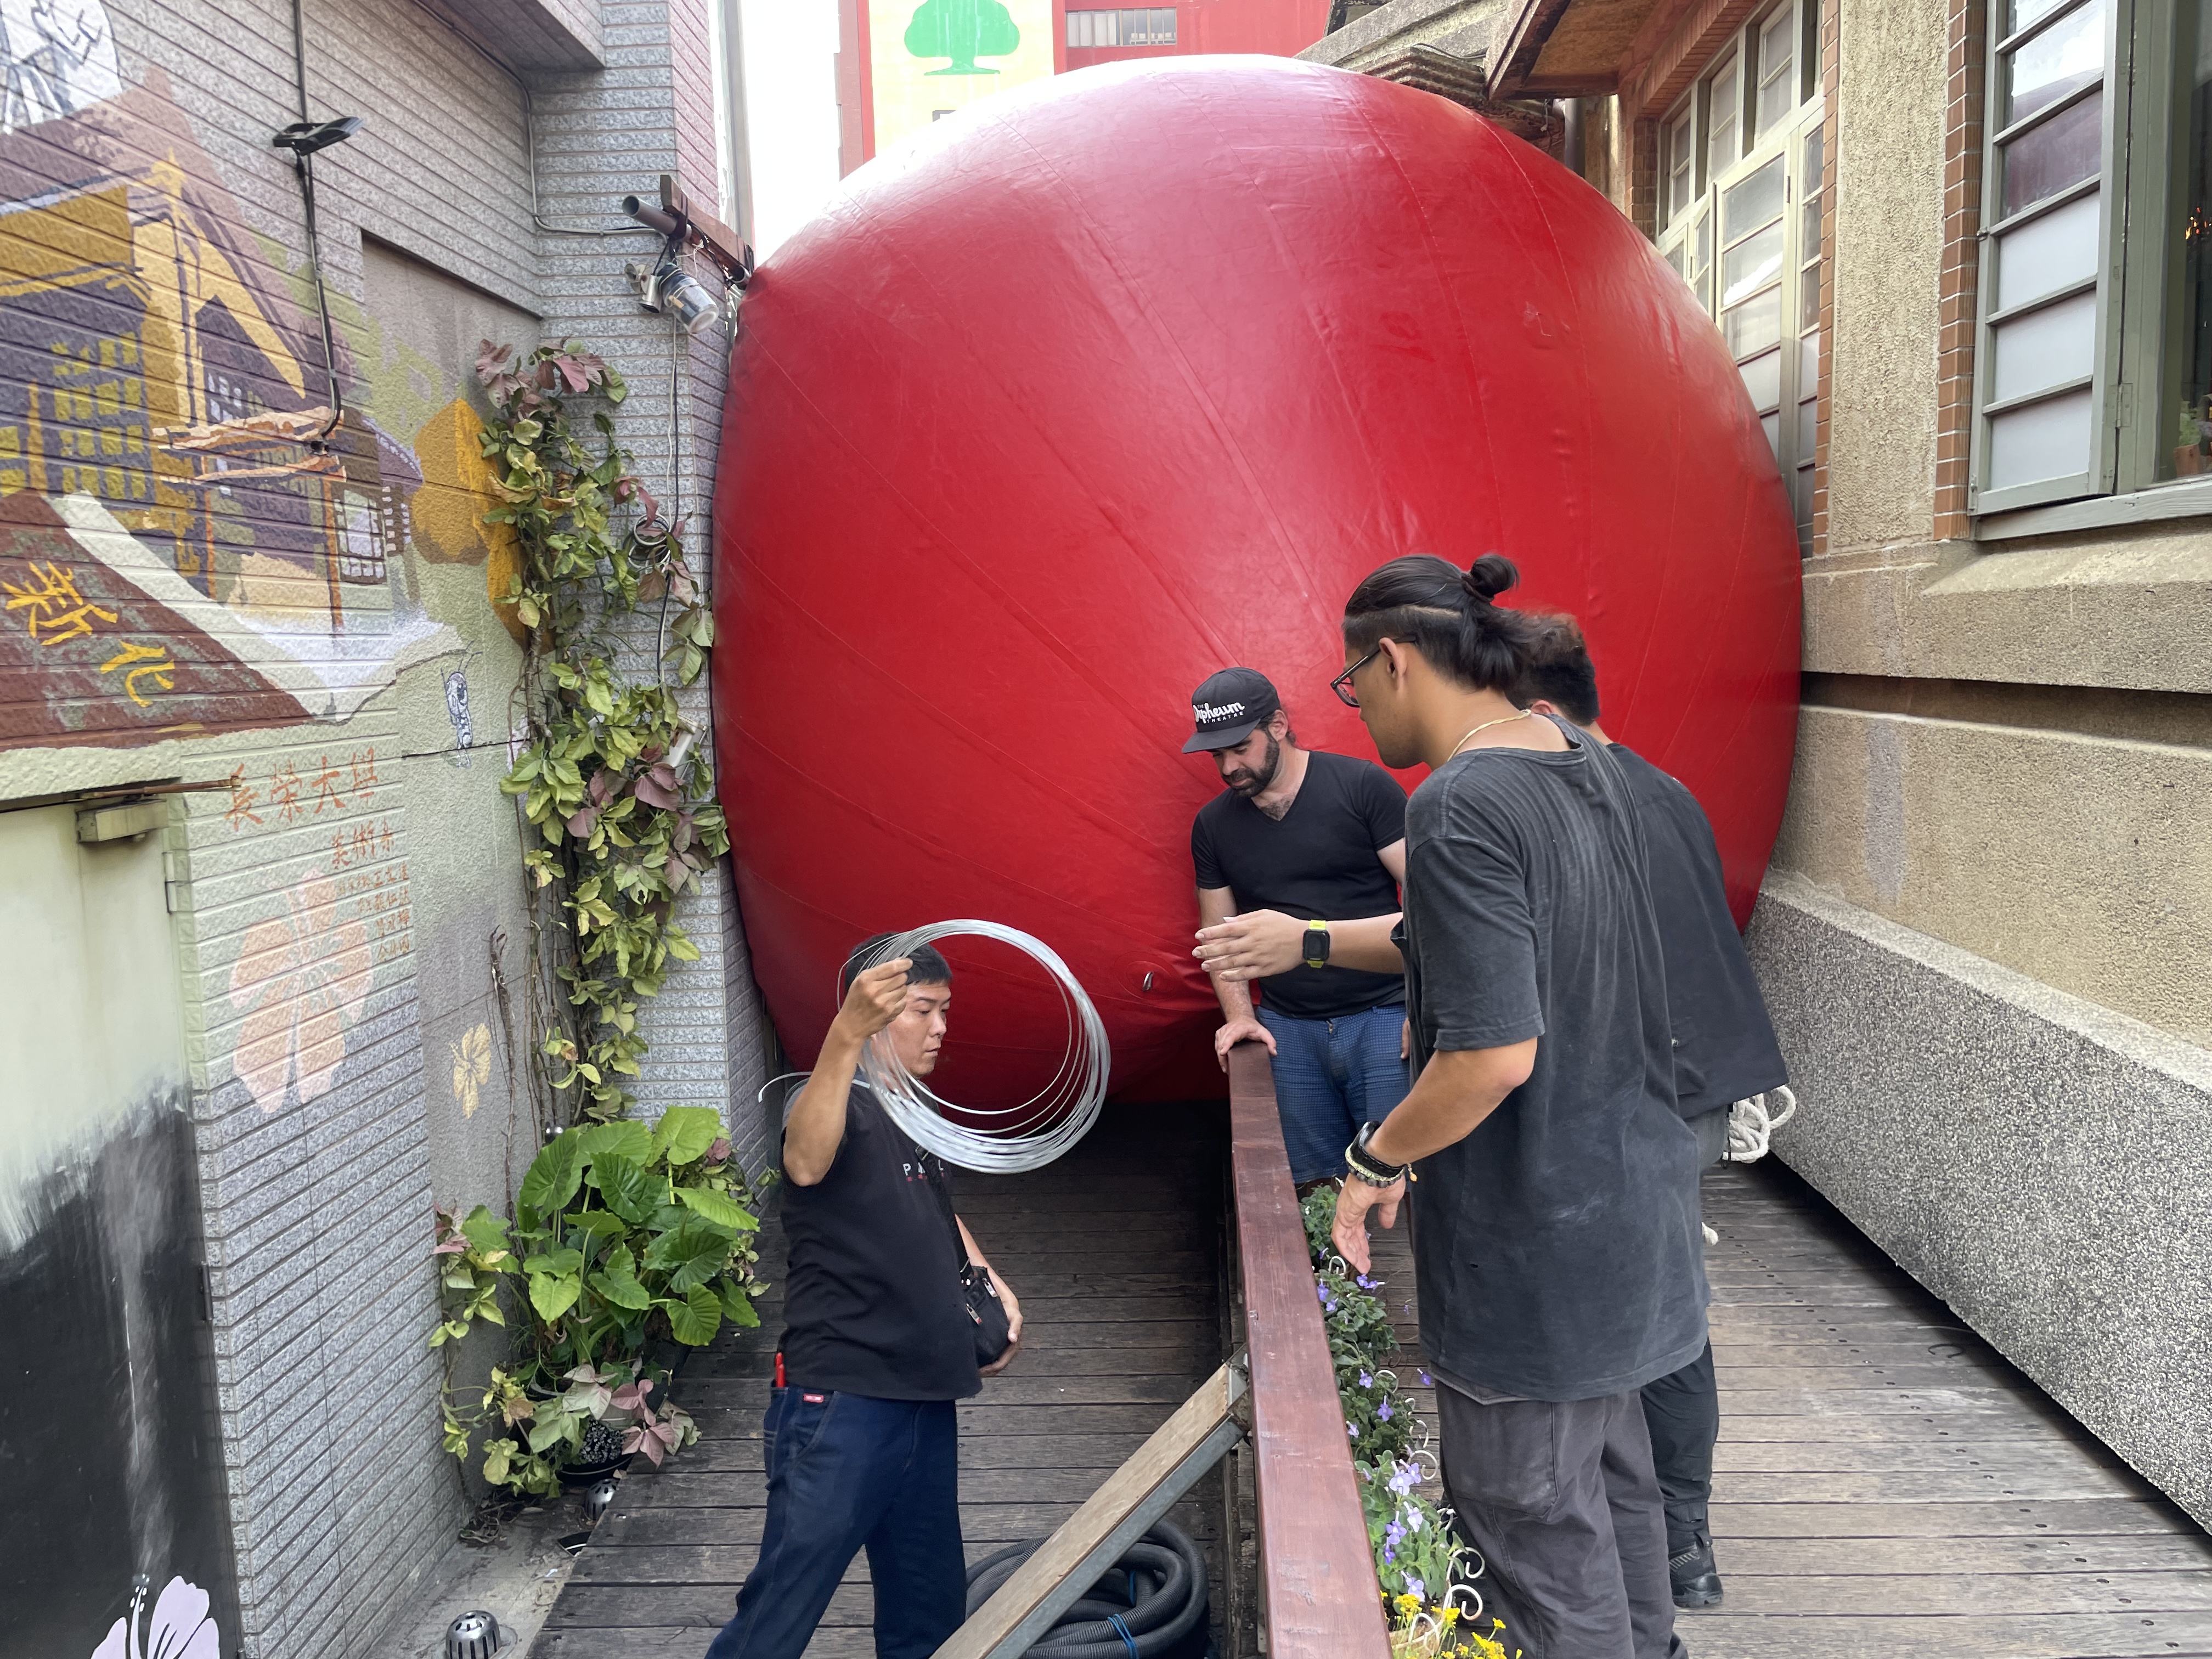 红球计划在台南，4月5日早上发生「遇刺」小插曲，下午策展团队改将红球放置在2栋新旧古迹建筑中间，更好与民众互动。记者万于甄／摄影